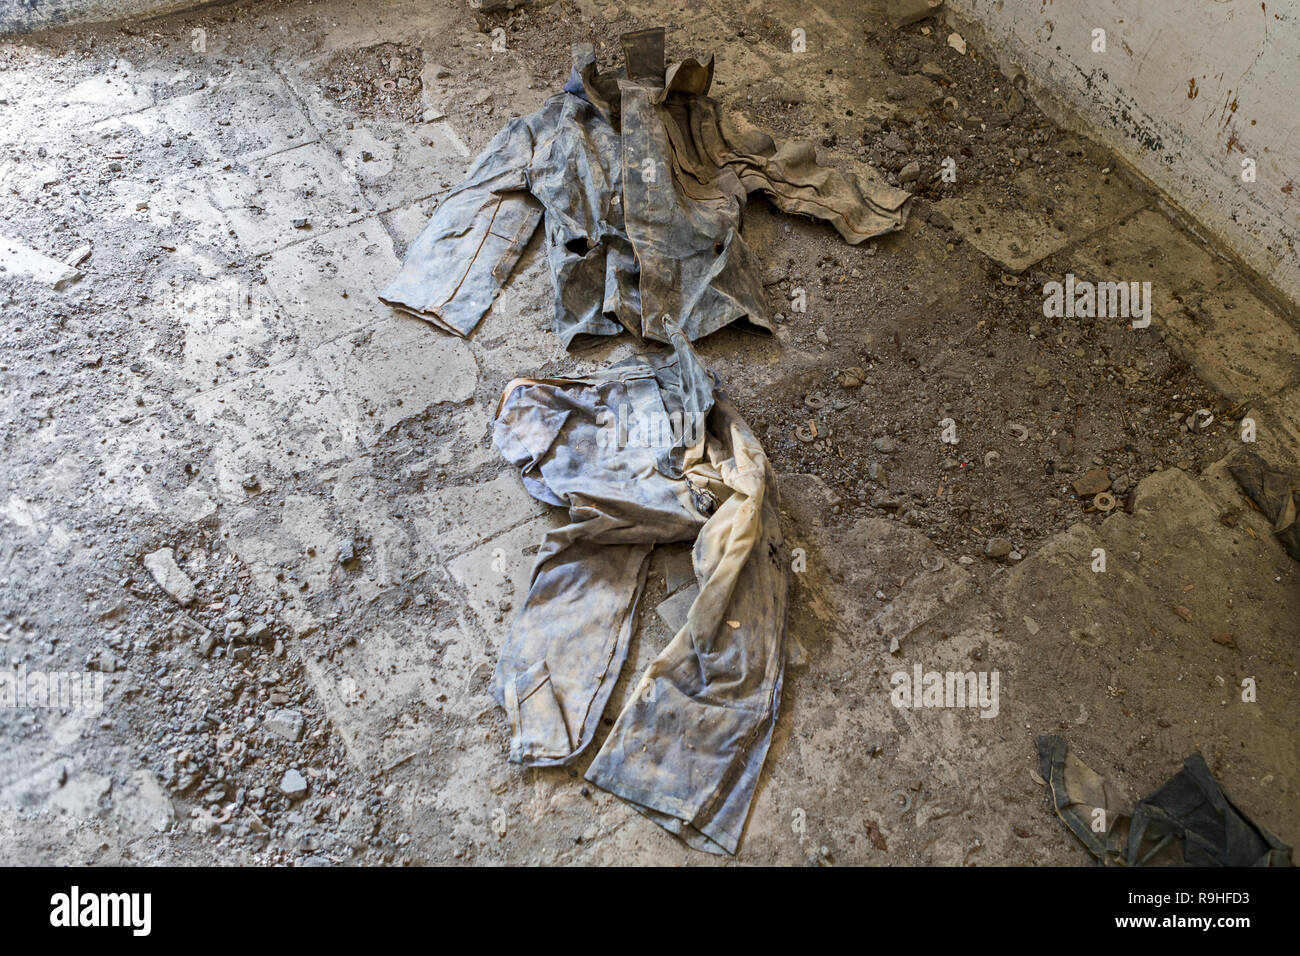 Prisoners uniform, Spac communist prisoner torture camp, Albania Stock Photo